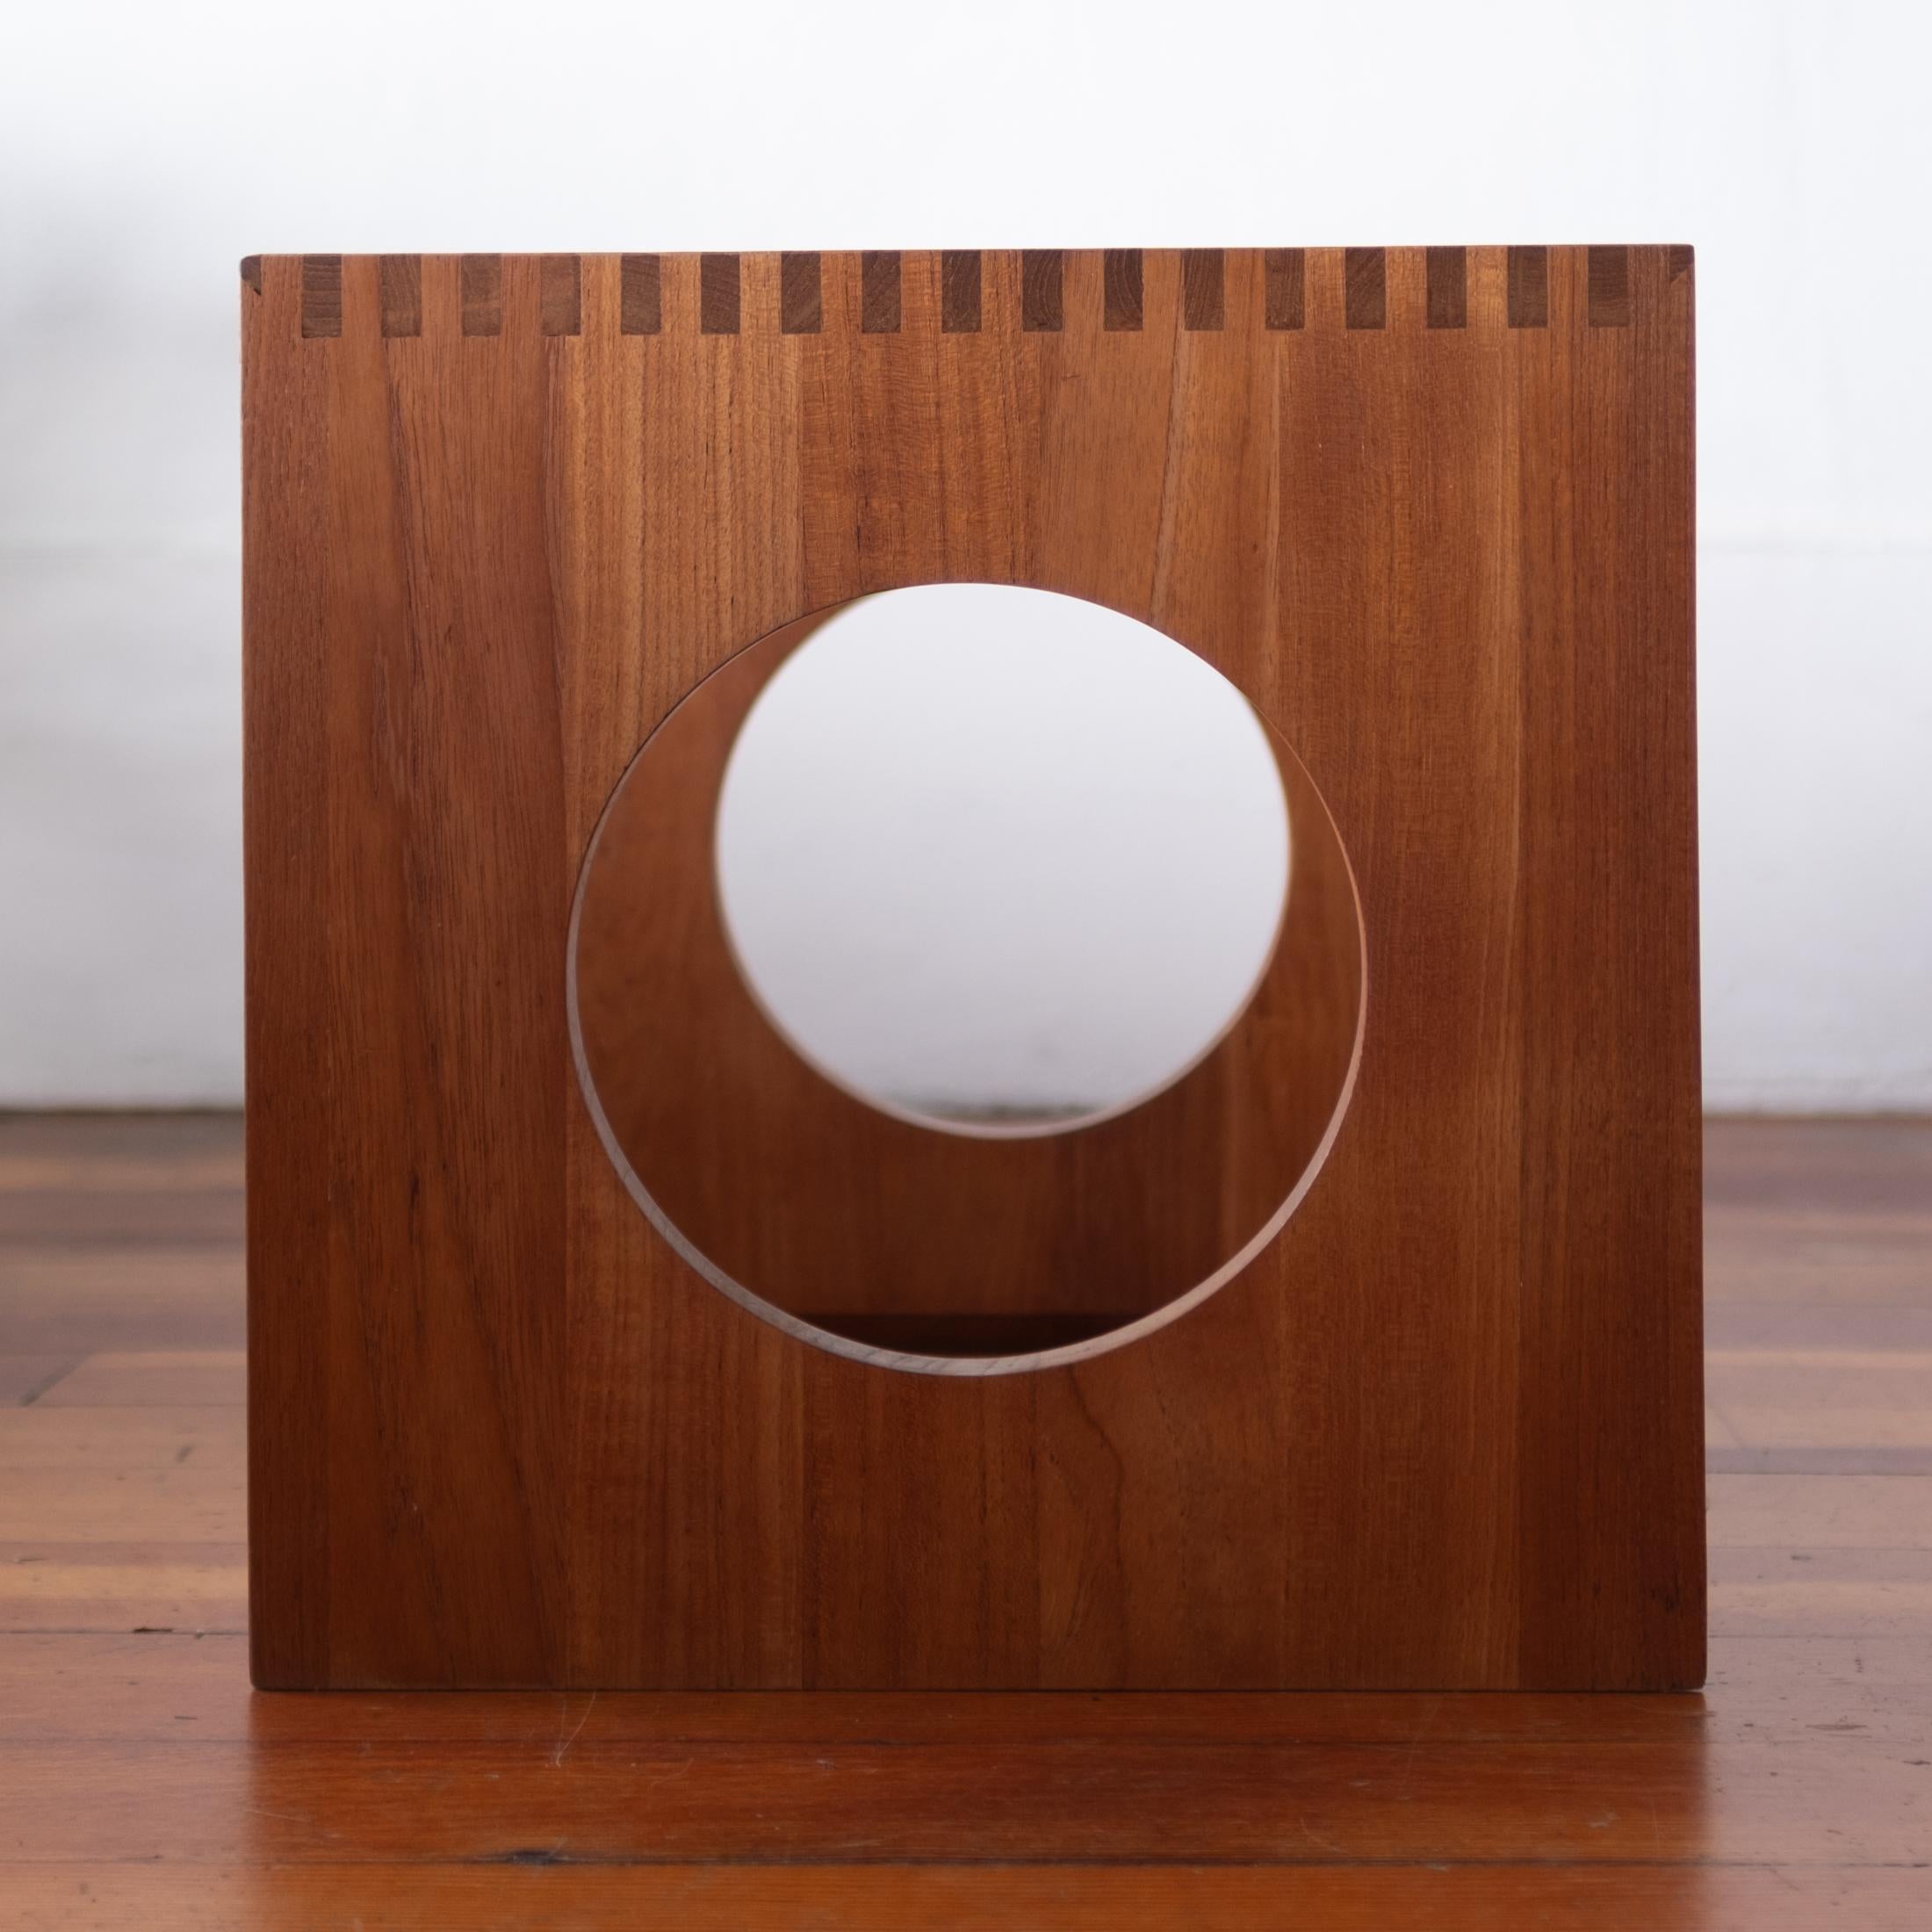 Teak Danish Modern Side Table by Nissen 1960s For Sale